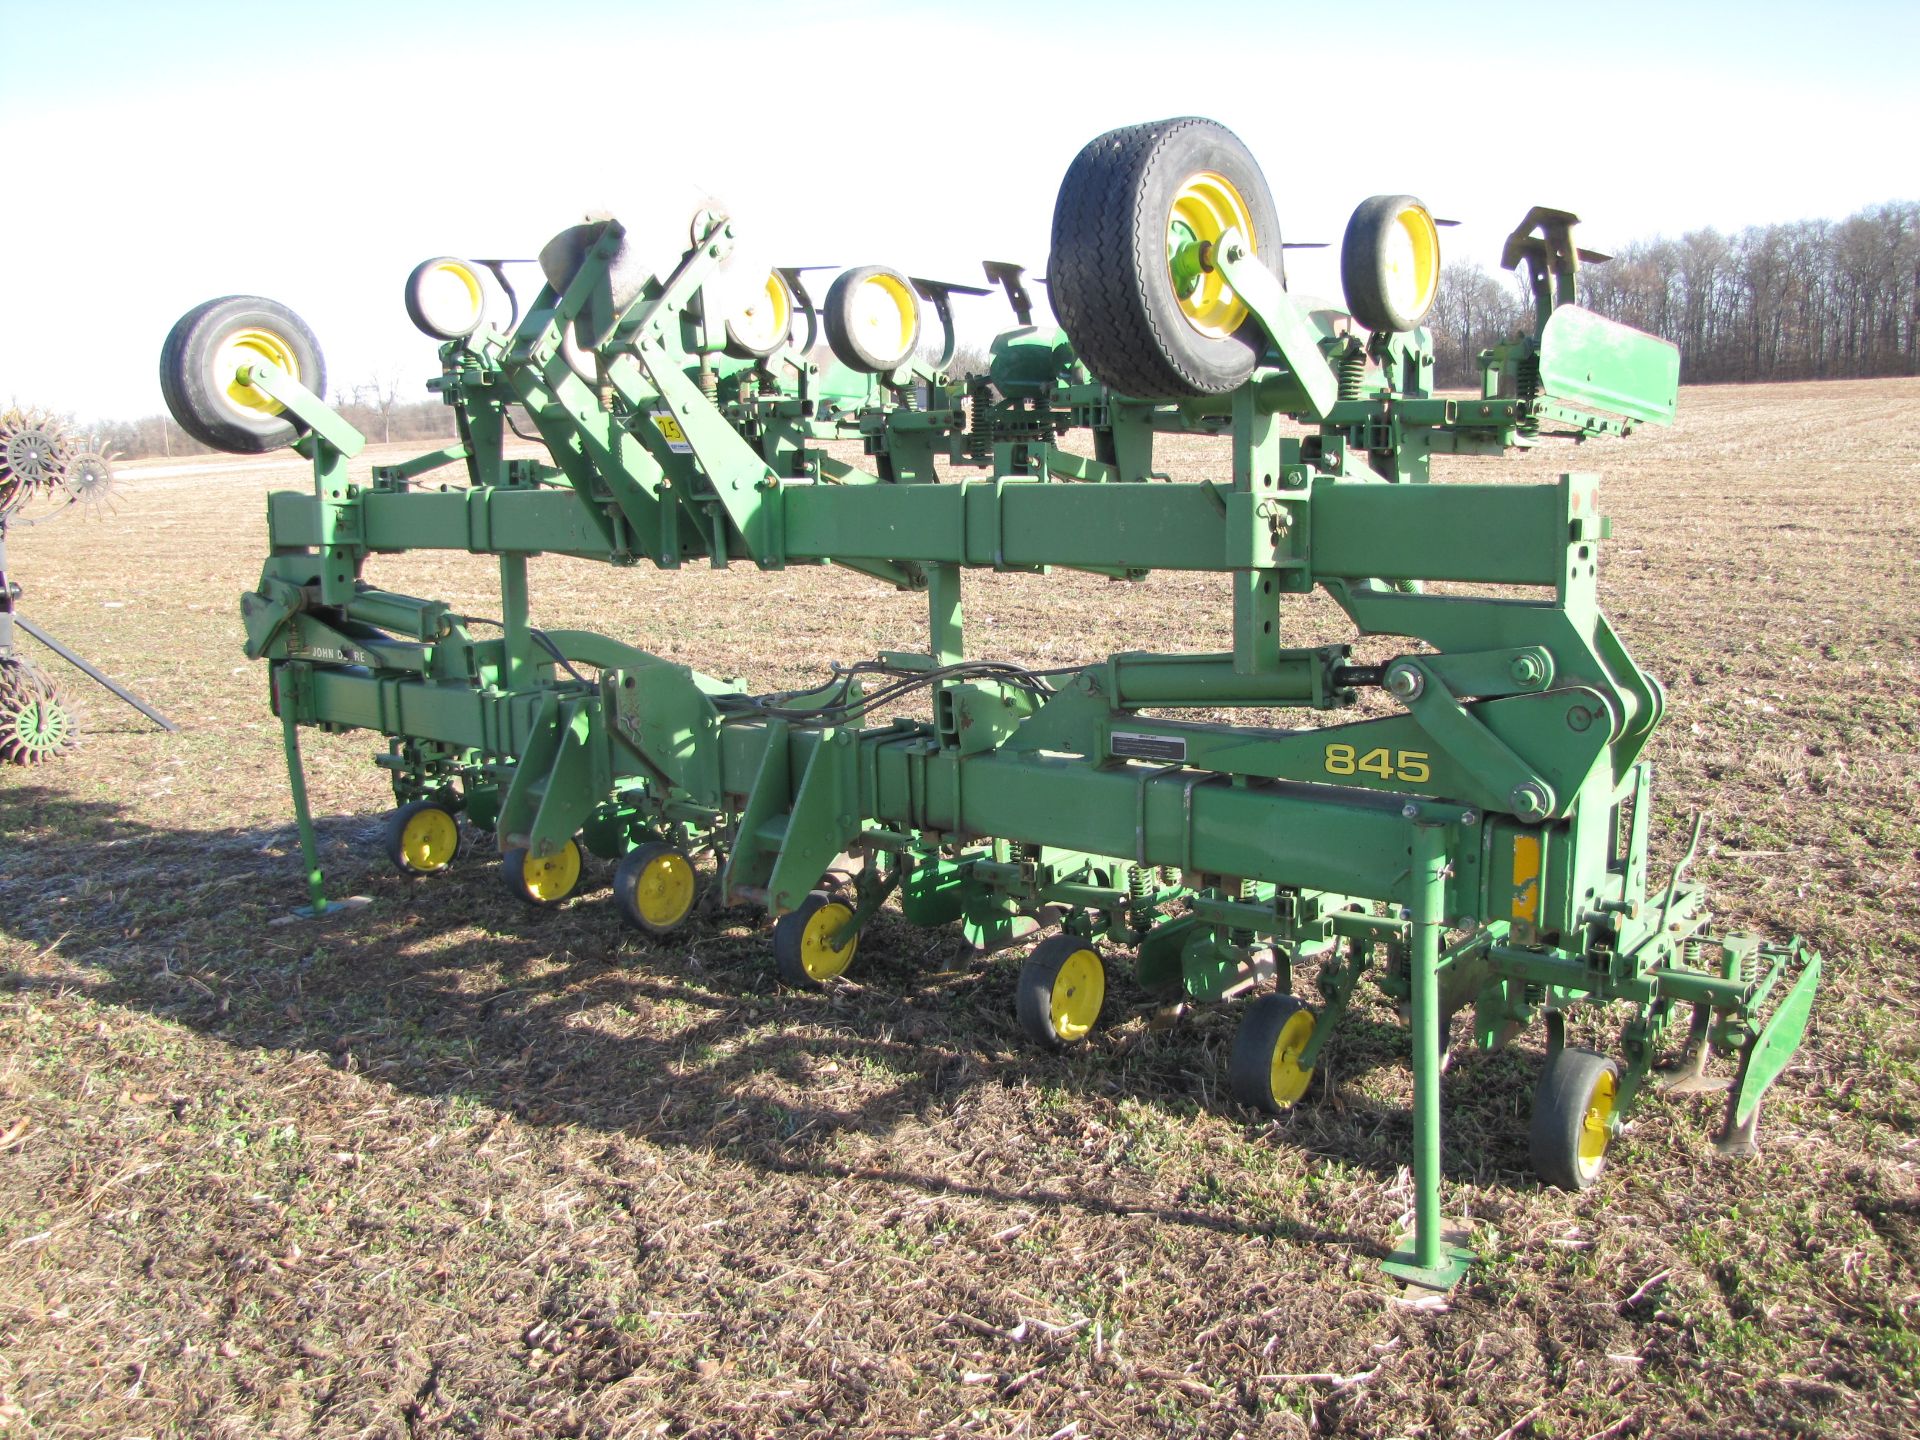 John Deere 845 12R30 row crop cultivator, flat fold w/ shields, 3 pt